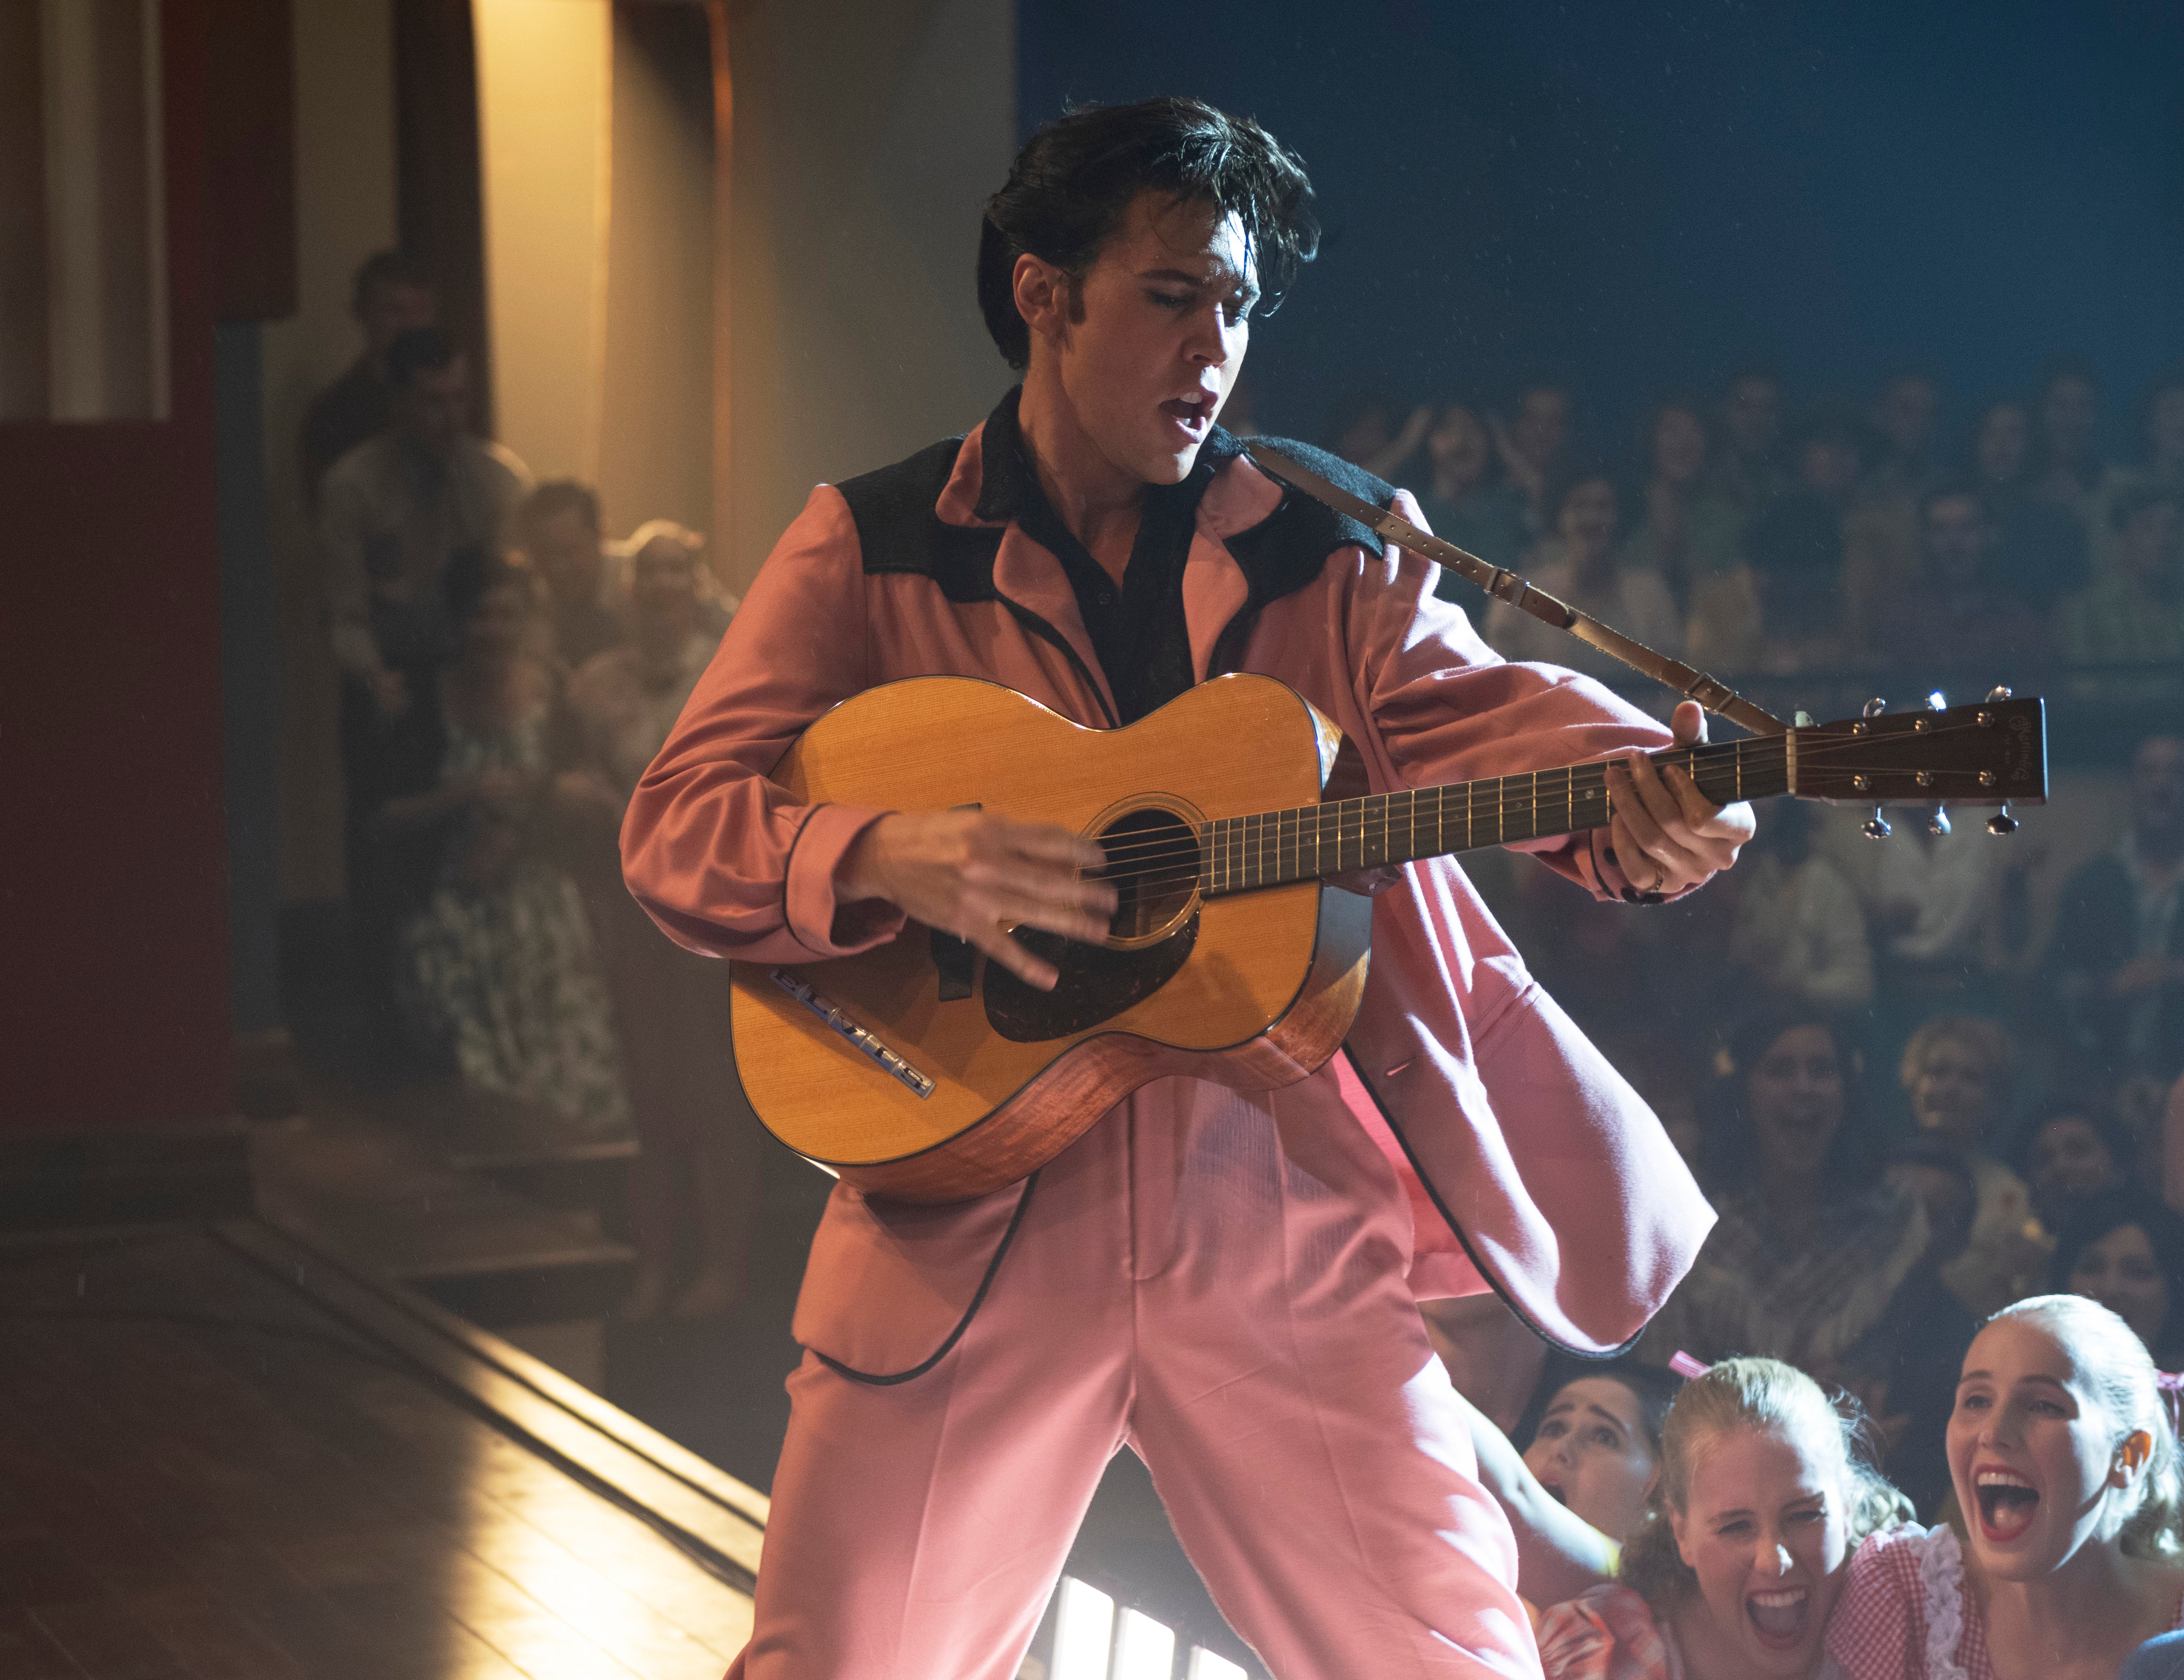 Butler as Presley in ‘Elvis’